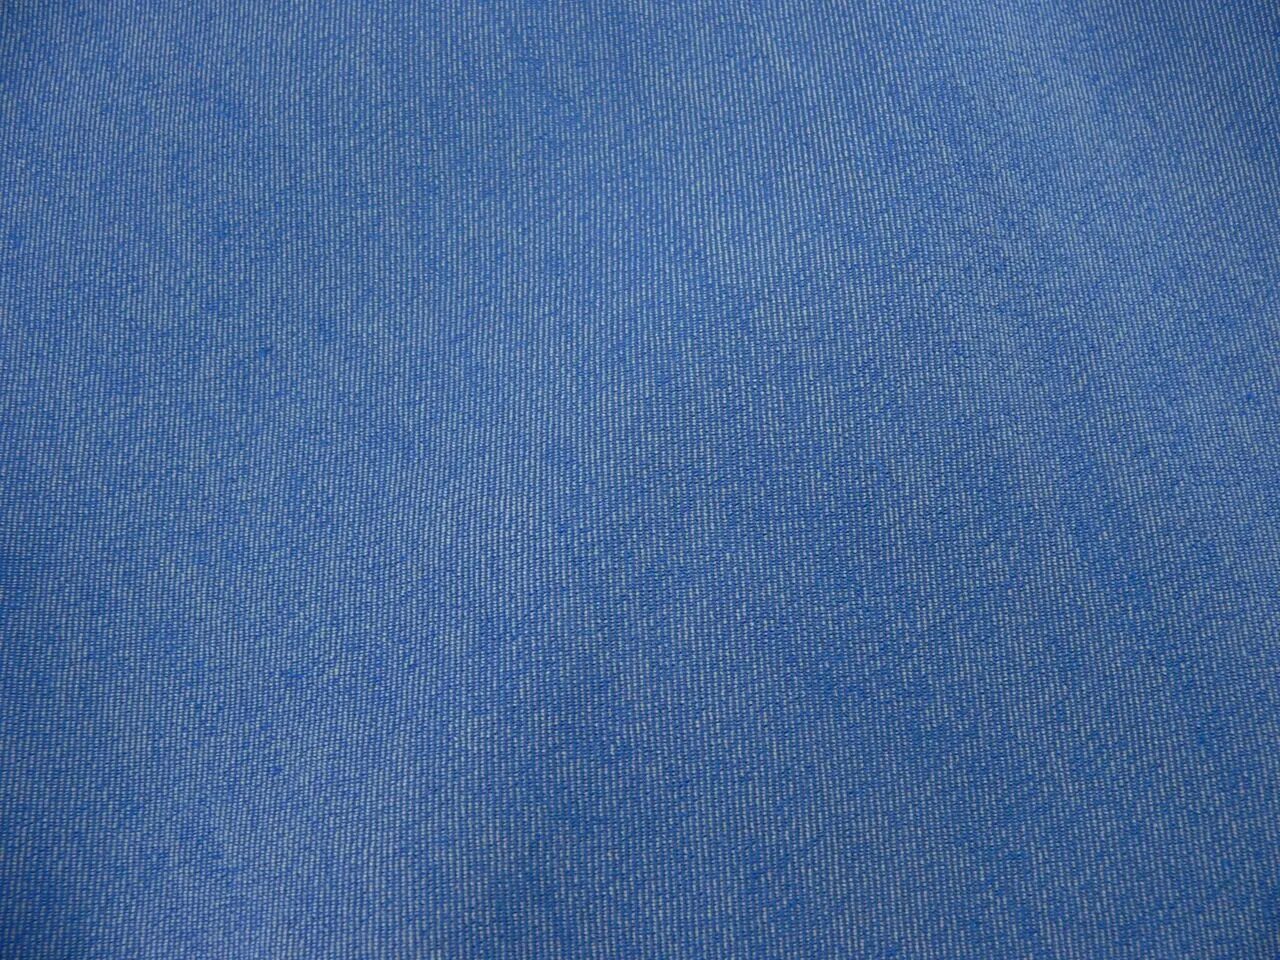 Текстура джинсов. Джинсовая ткань. Фактура джинсовой ткани. Текстура джинсовой ткани. Синяя ткань.